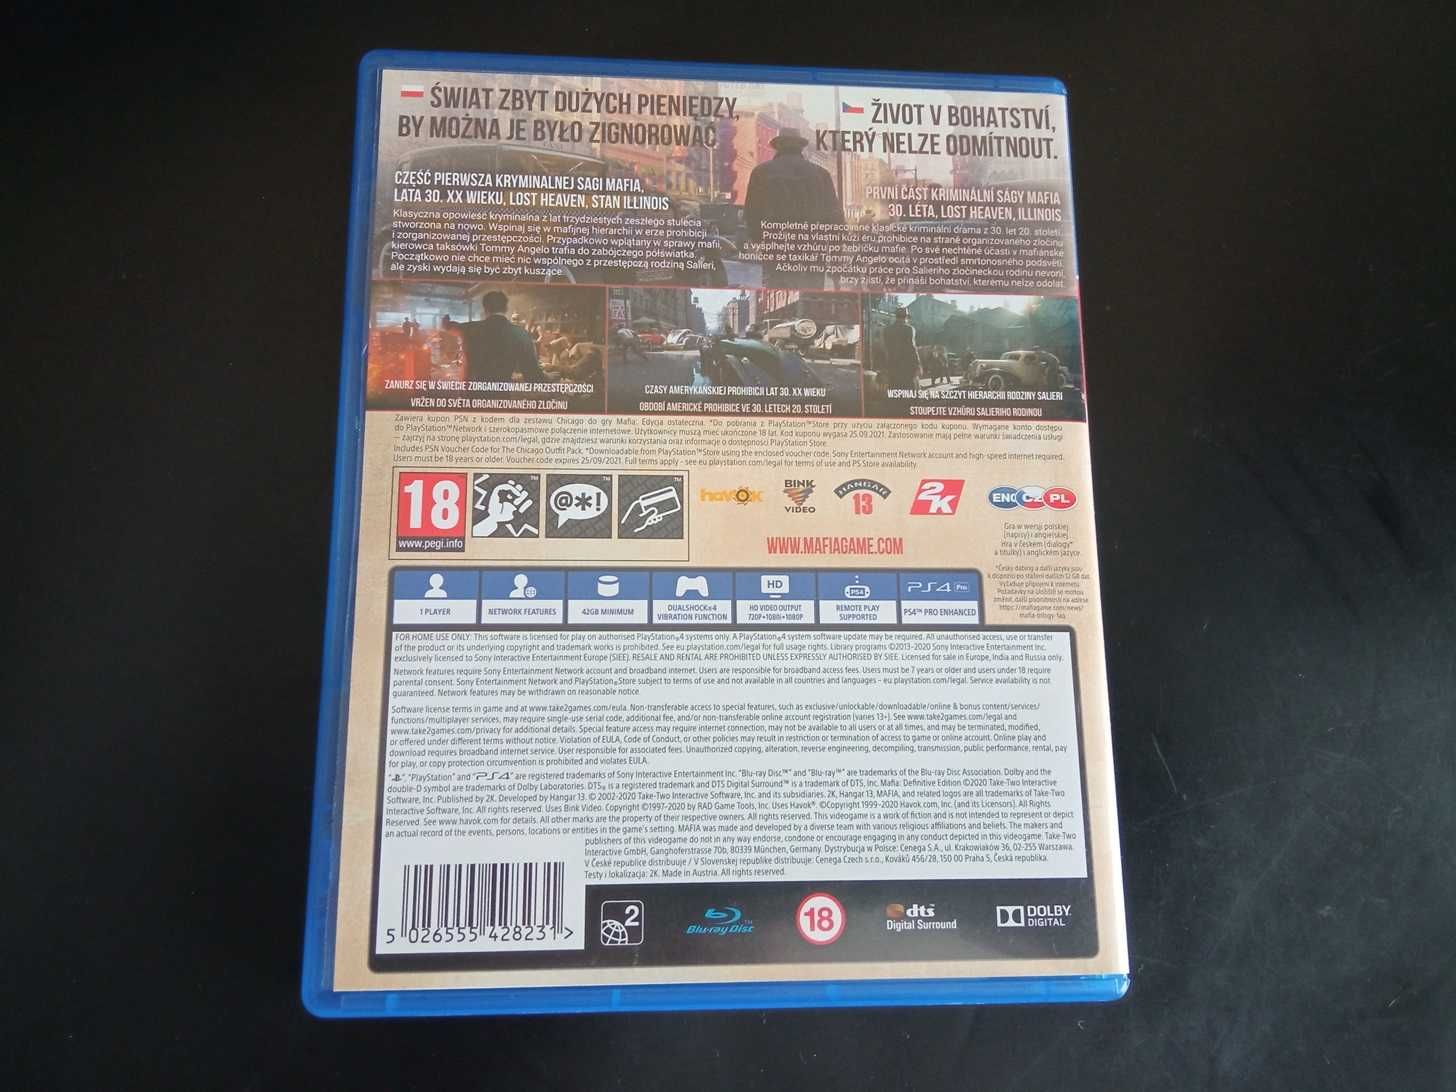 Mafia definitive edition PS4 PL